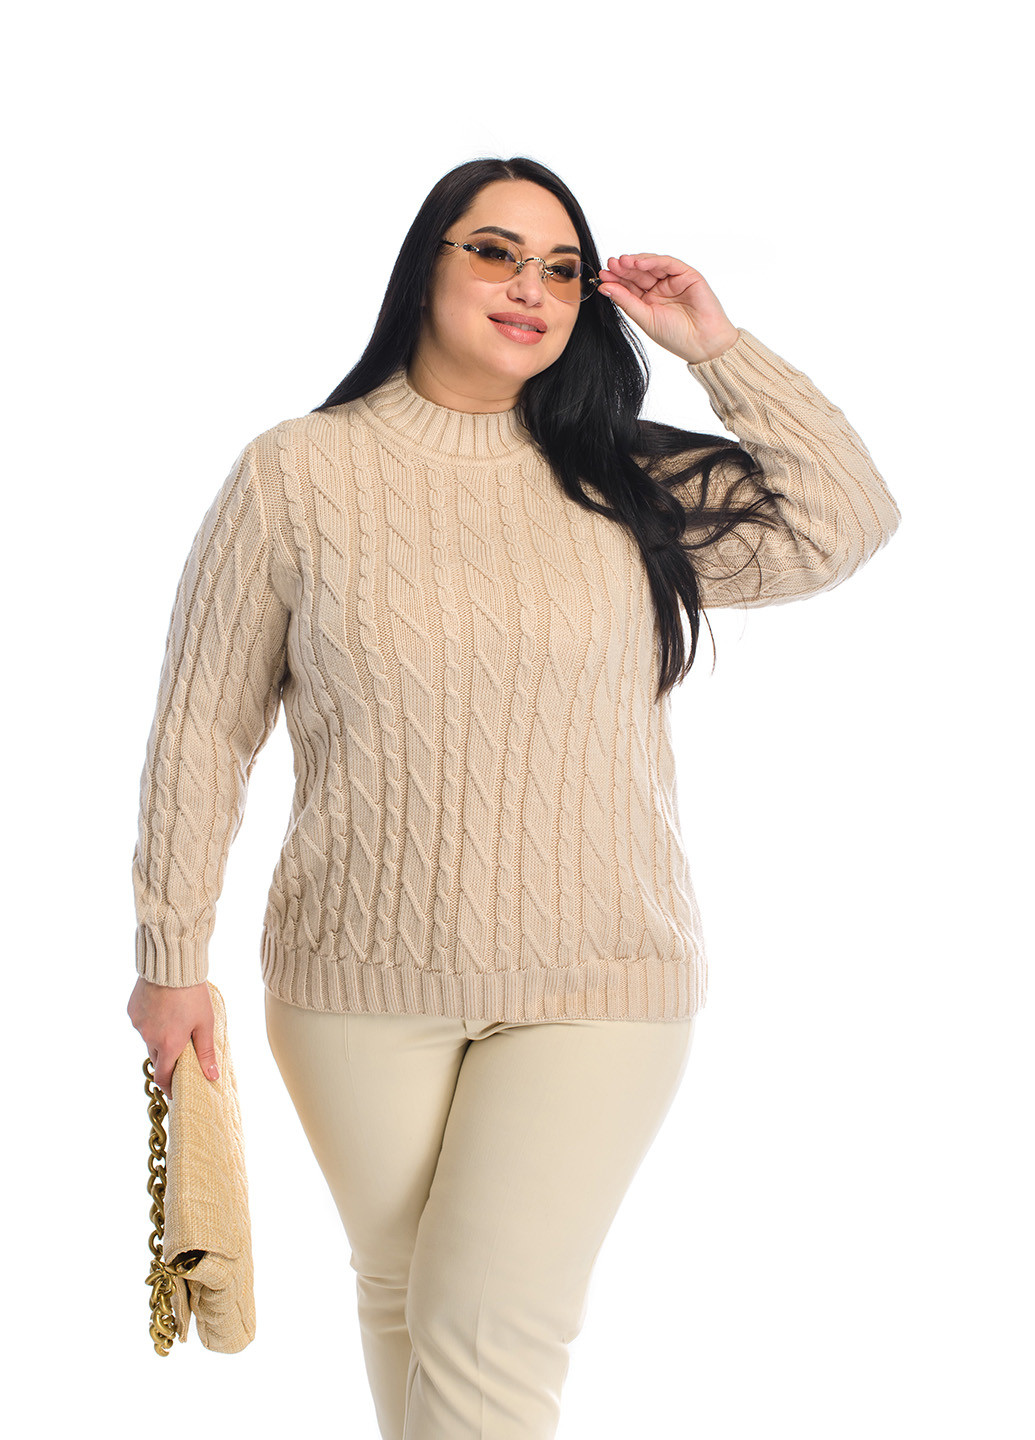 Пудровий жіночий м'який светр з стійкою коміром SVTR